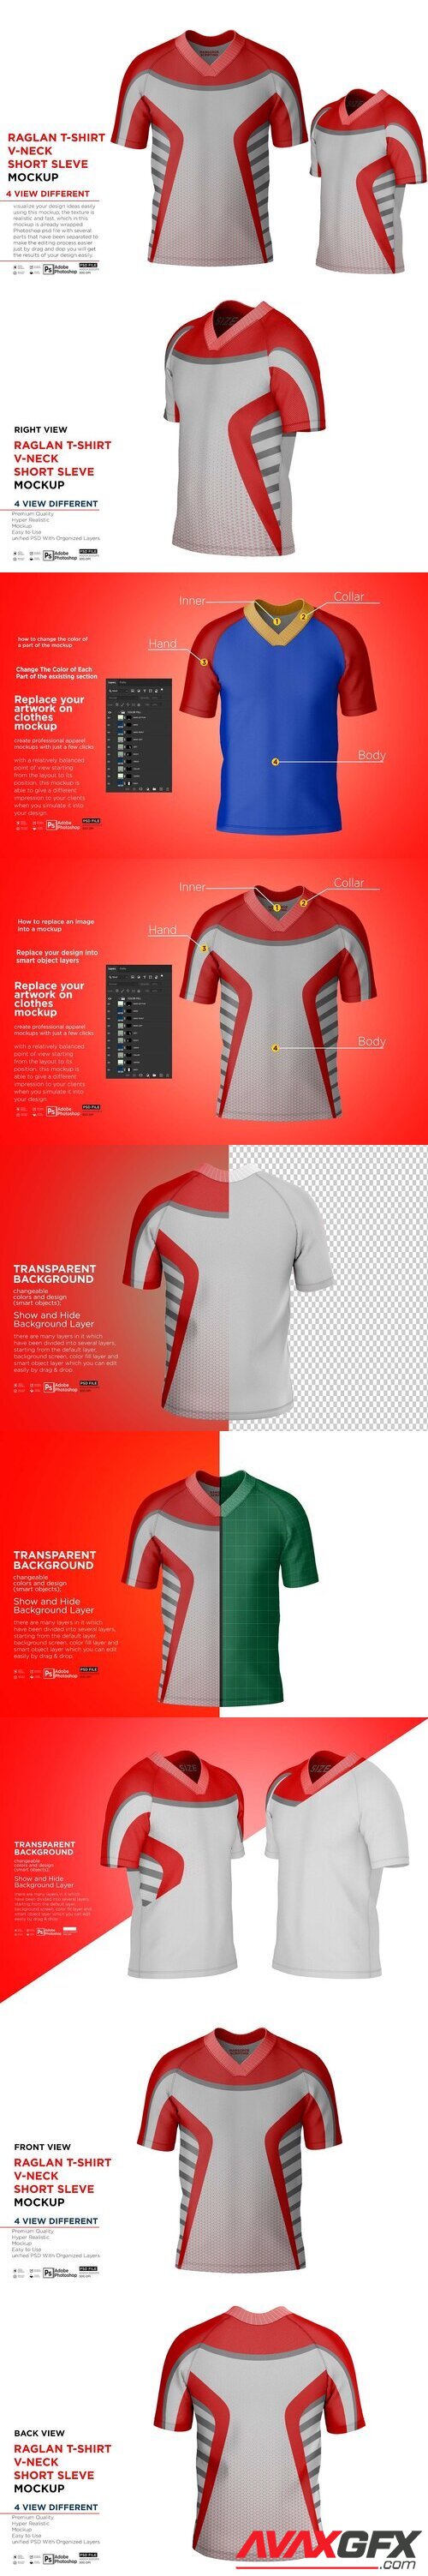 CreativeMarket - Raglan T-Shirt V-Neck Short Mockup 10371180 